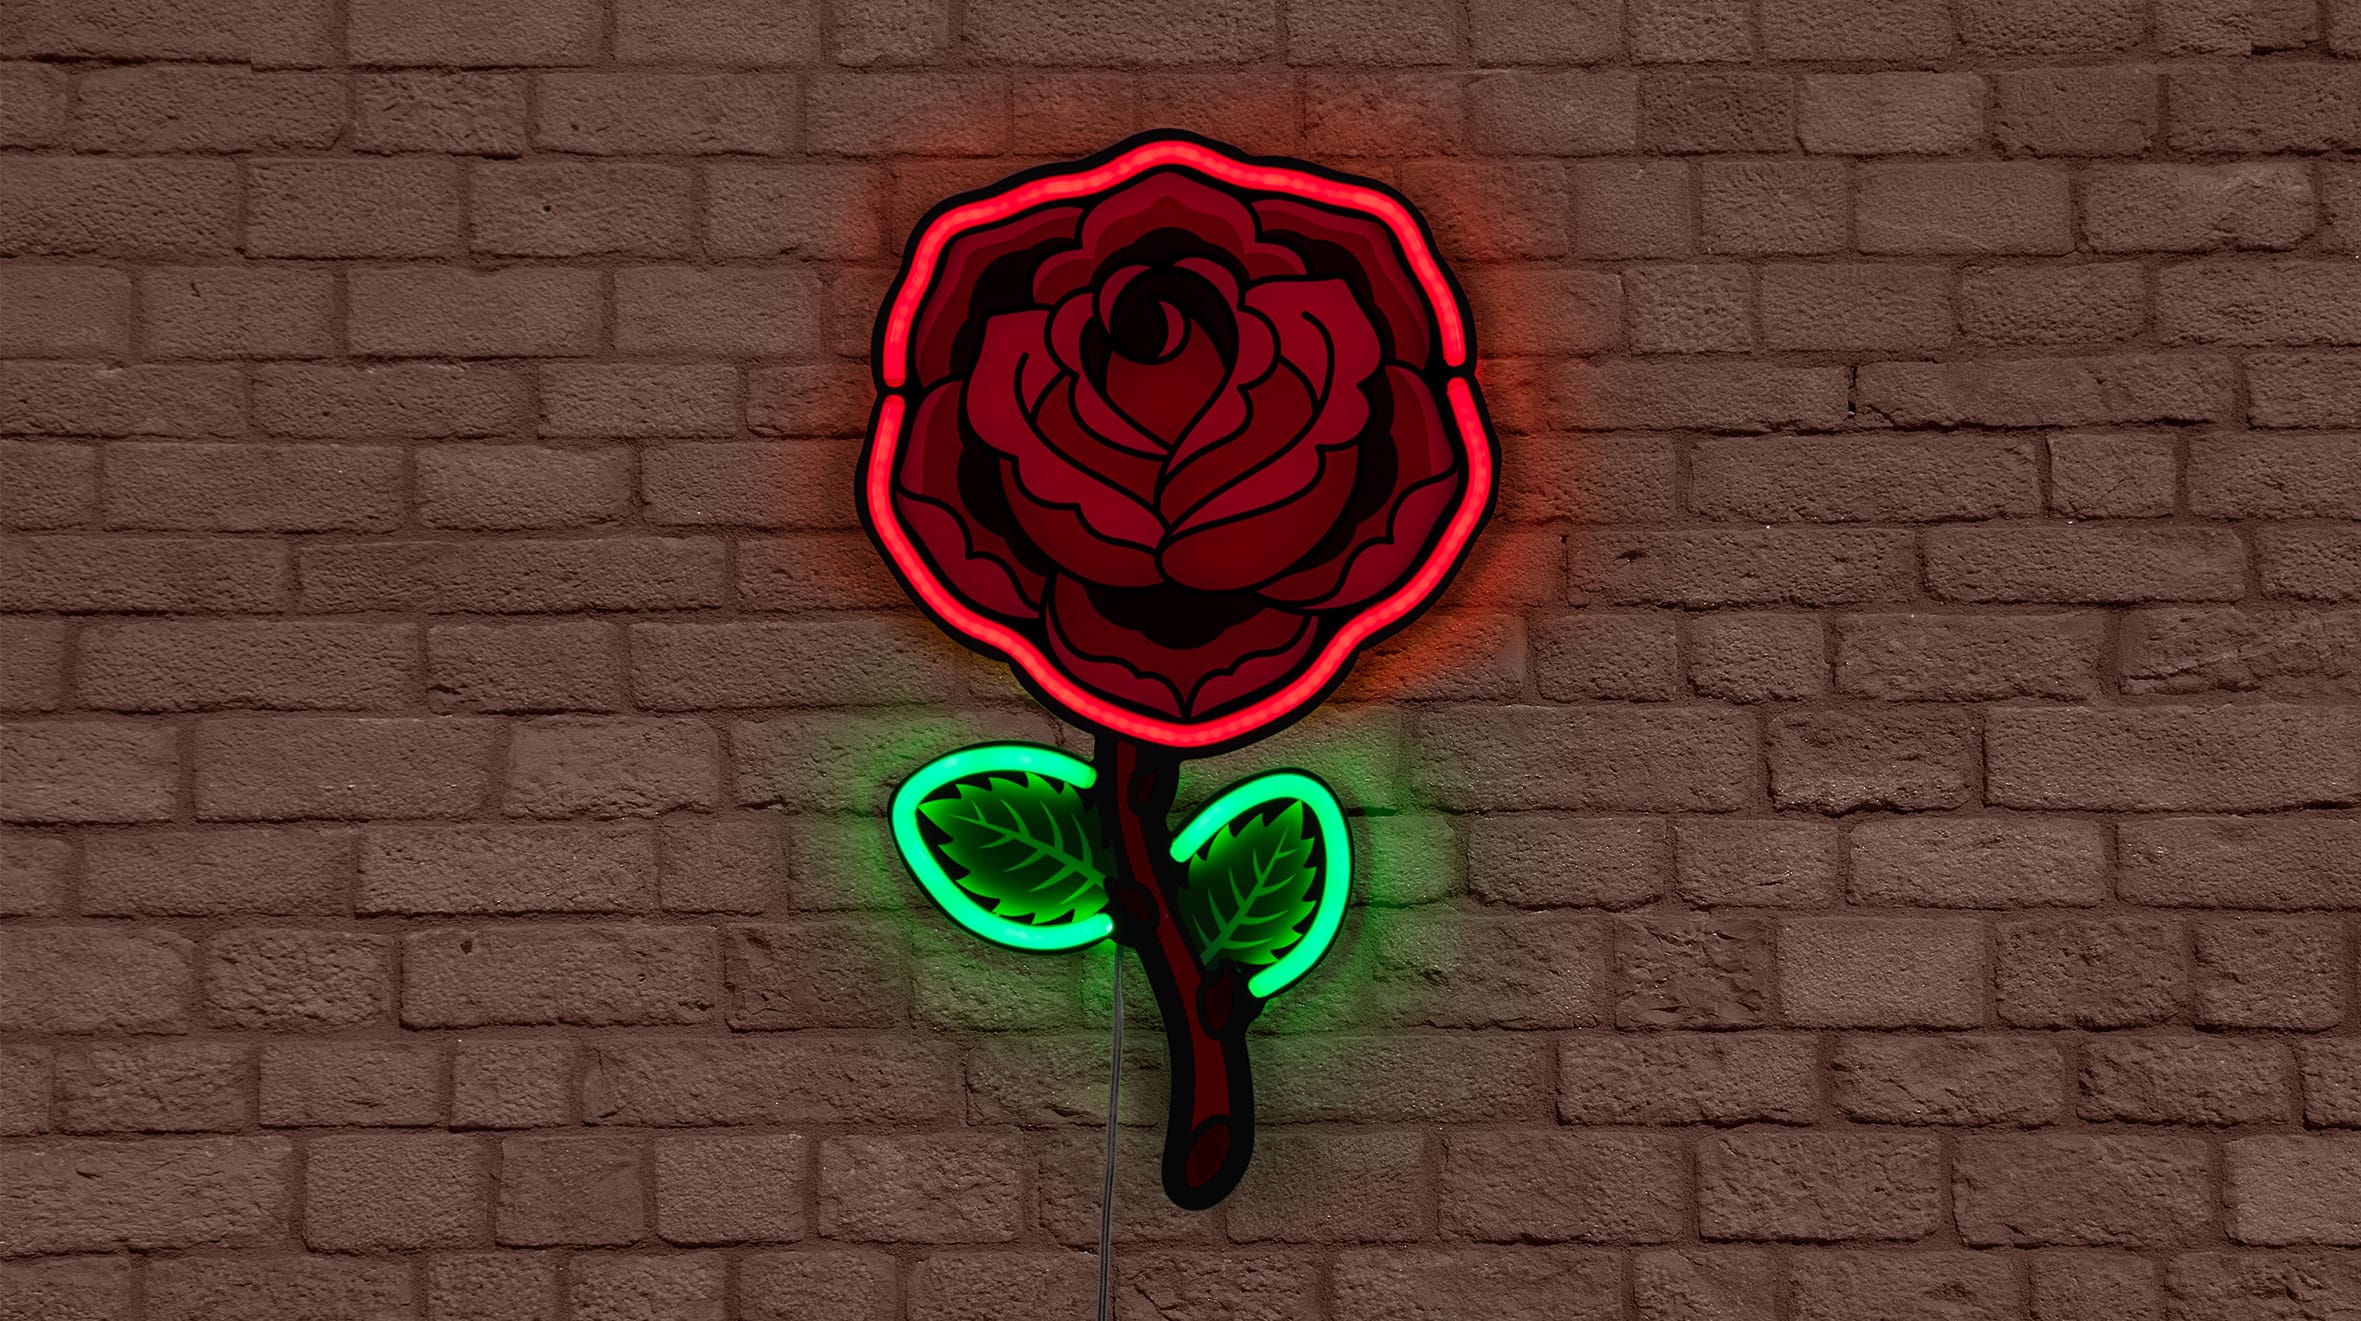 Rose_detail